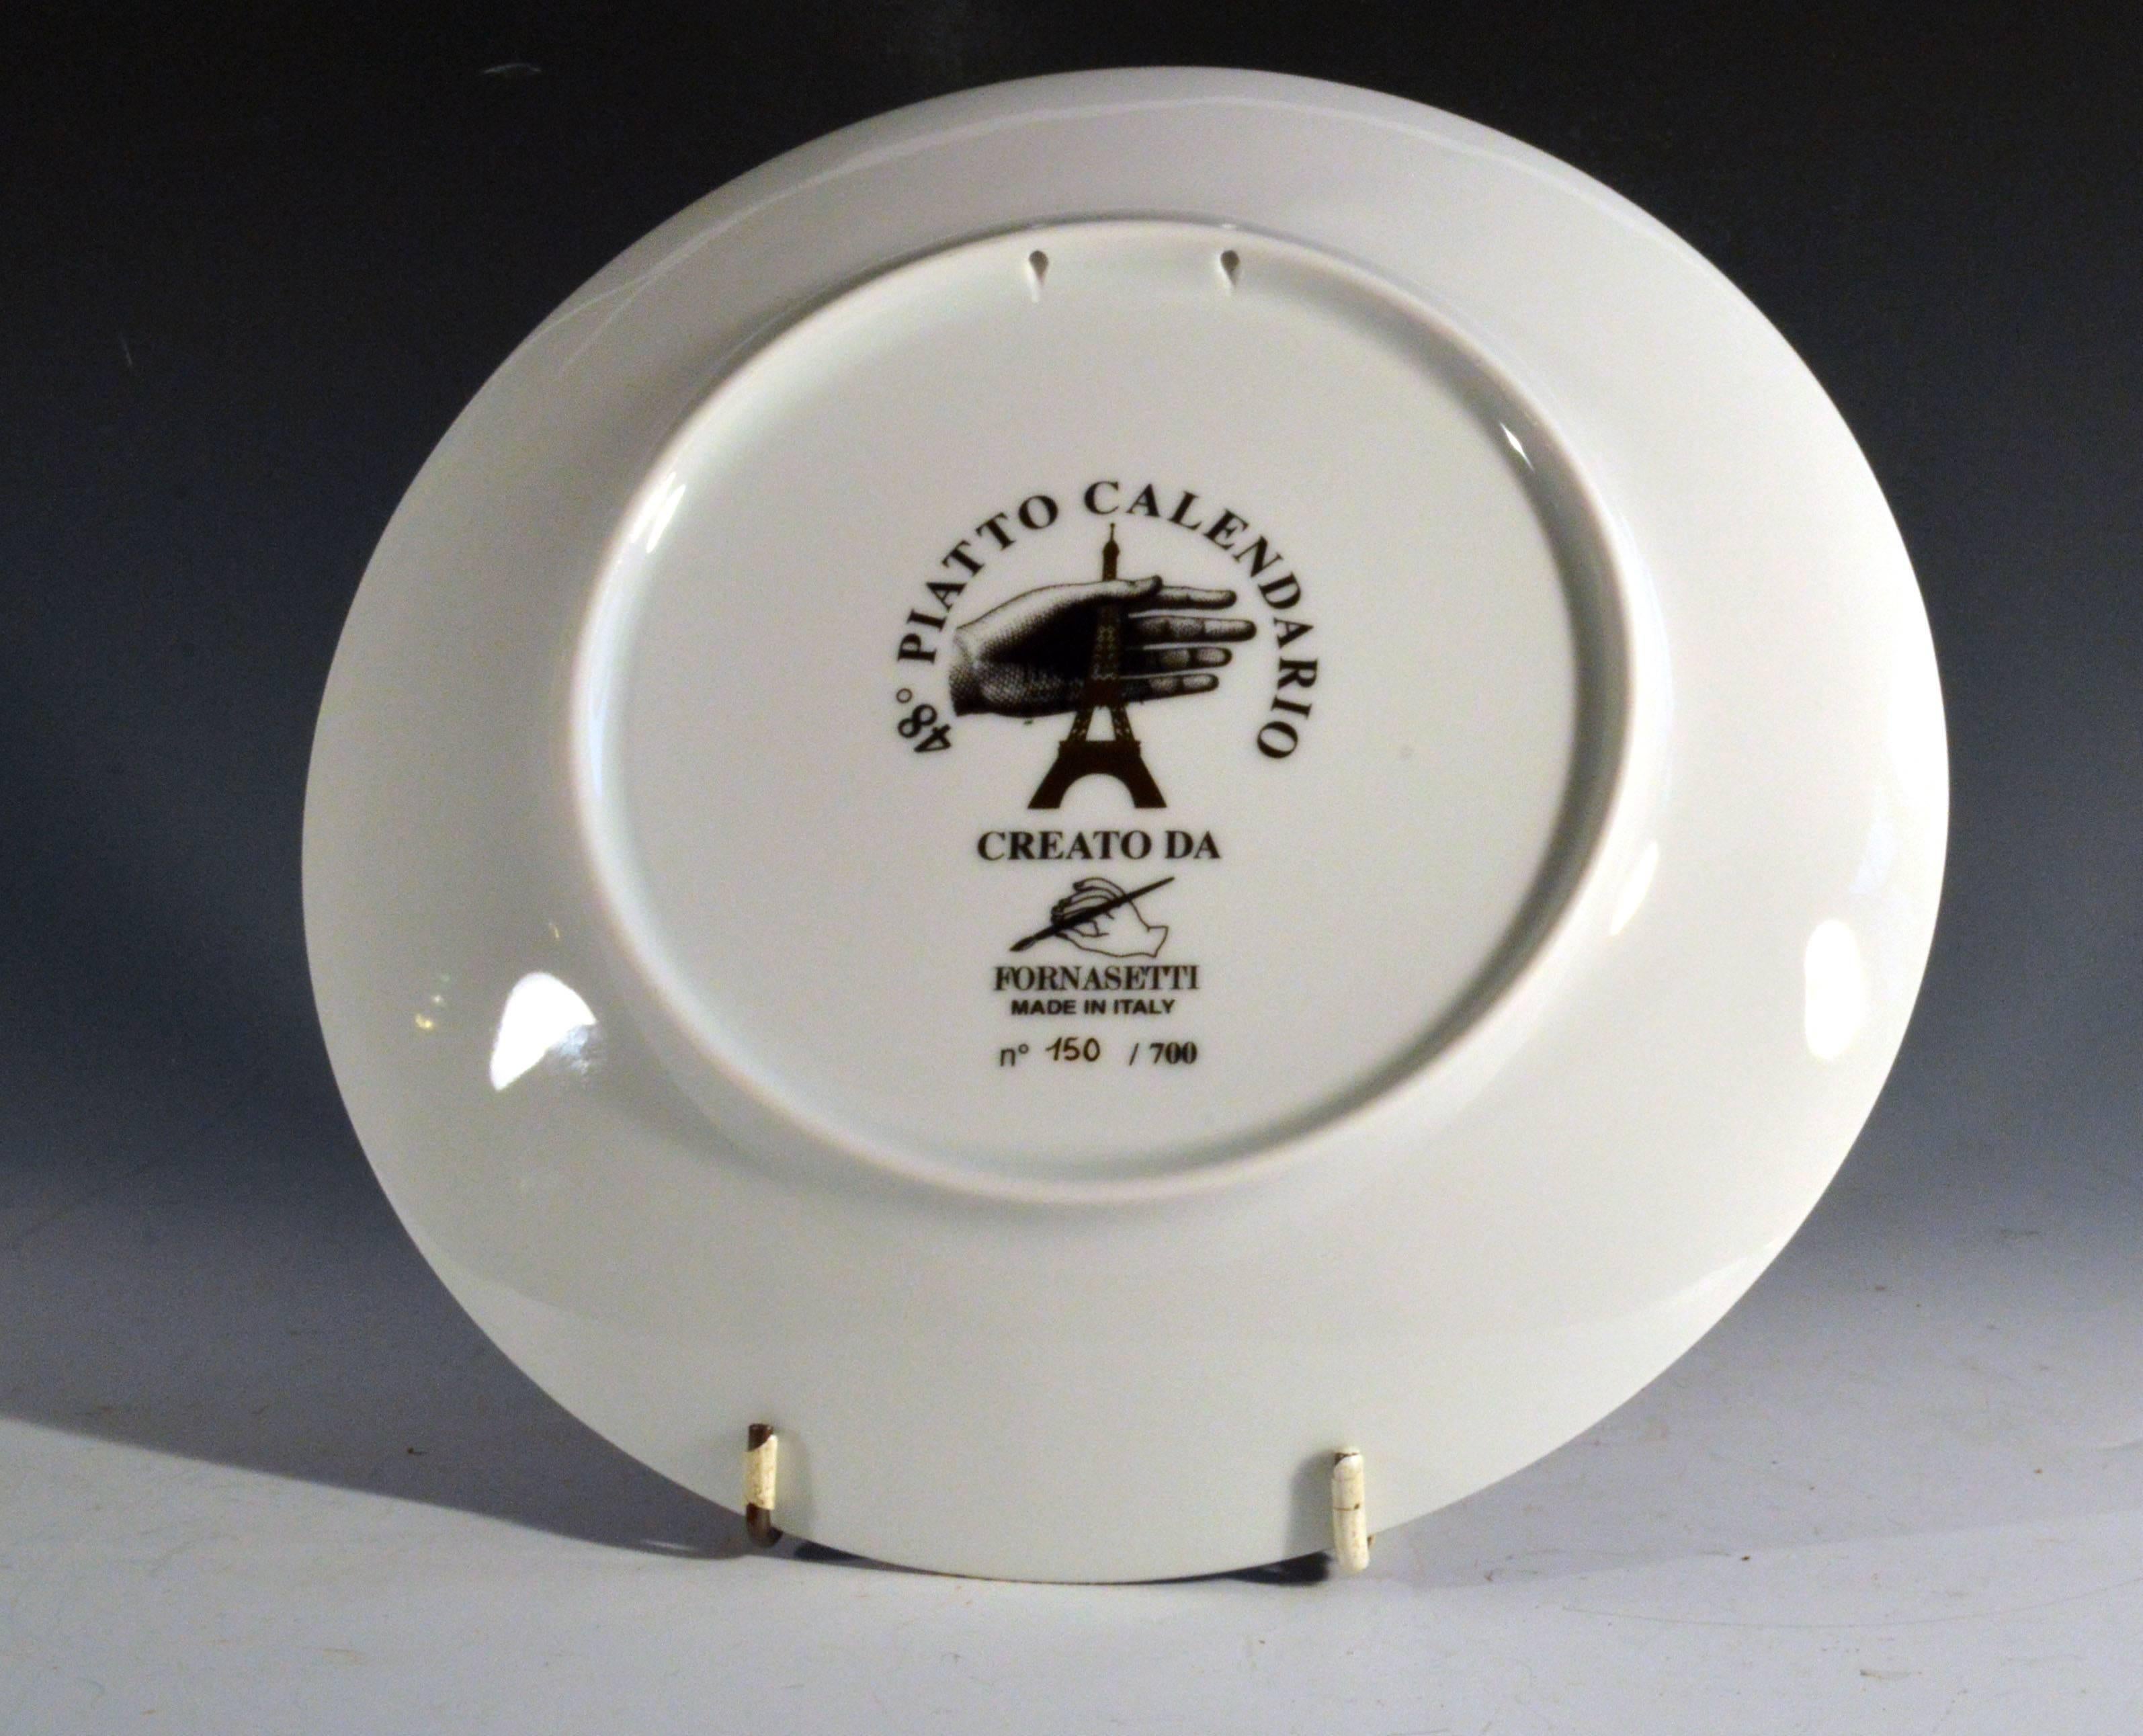 Modern Barnaba Fornasetti Porcelain Calendar Plate 2015, Number 150 of 700 Made